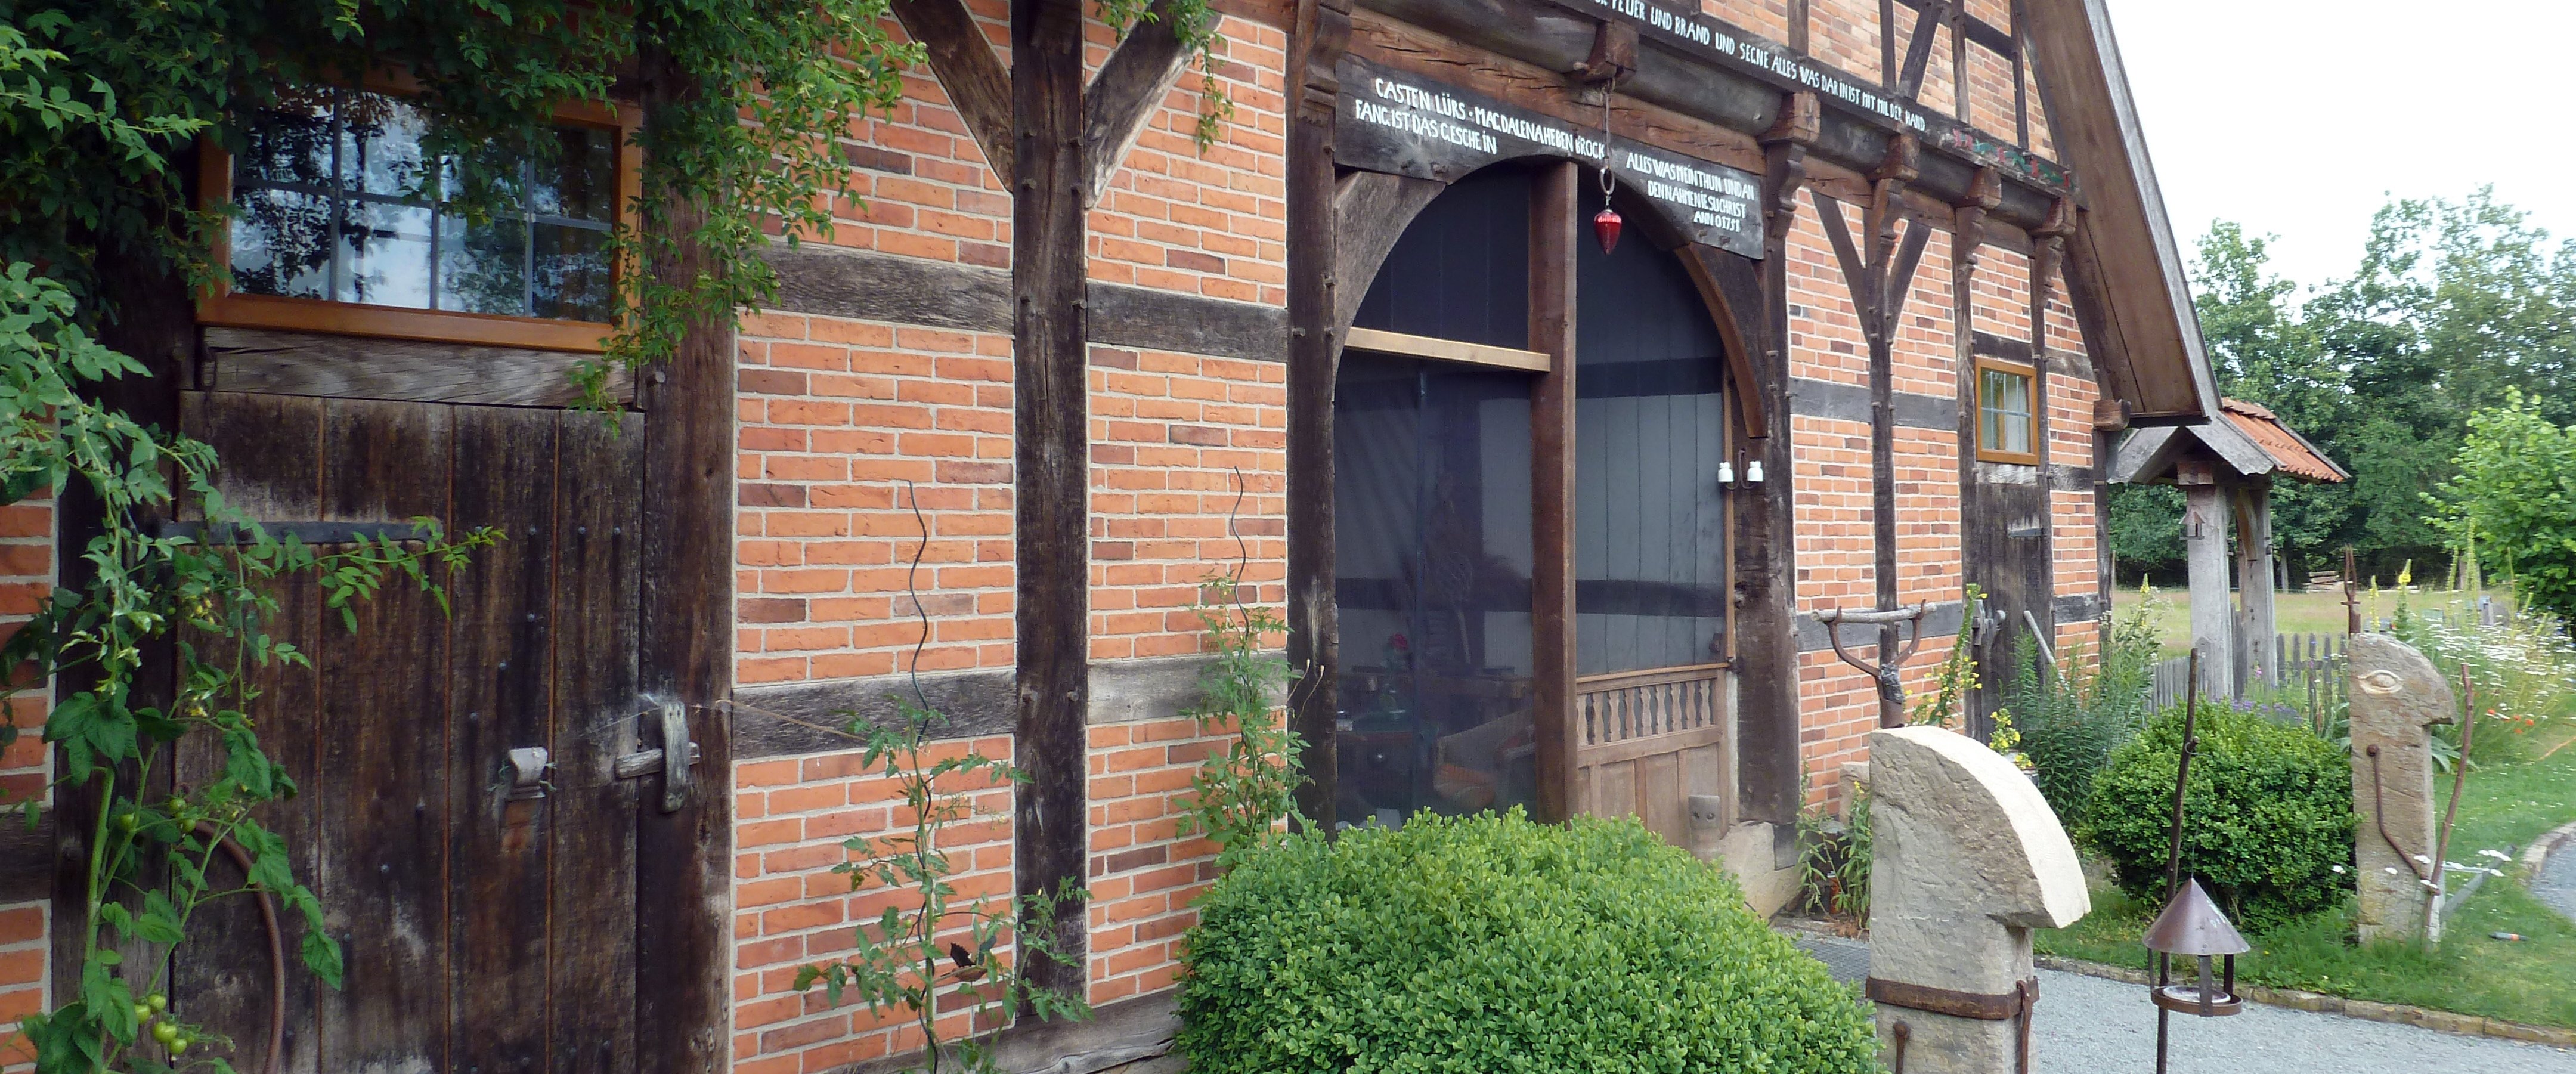 Torbogen im Eingang eines alten Fachwerk-Bauernhauses